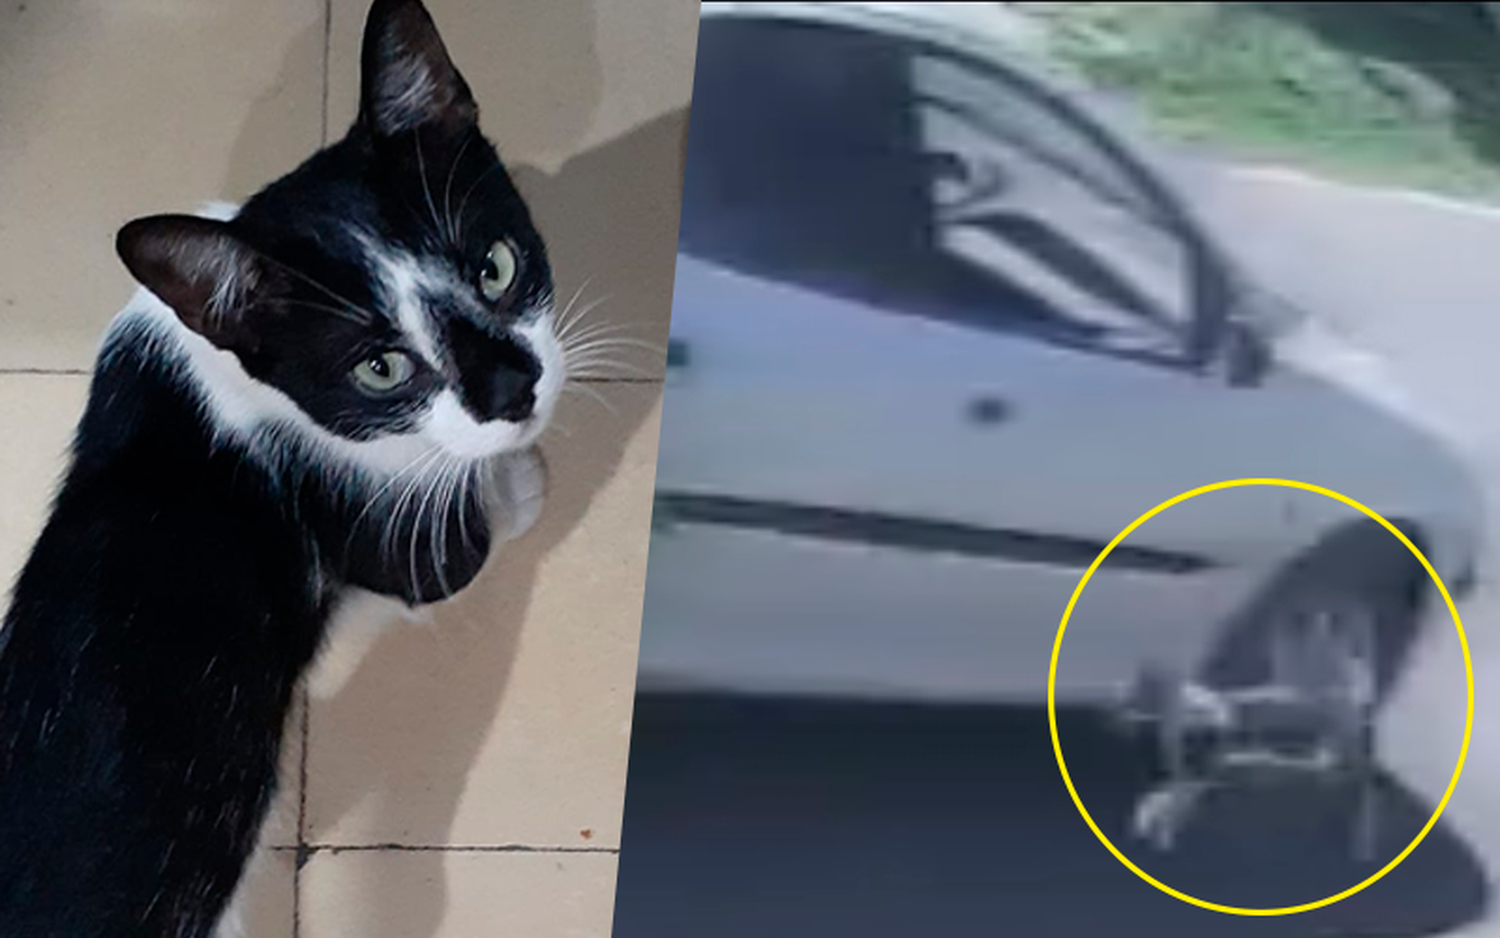 Piden colaboración para los gastos veterinarios de Coquito, el gato arrojado de un auto